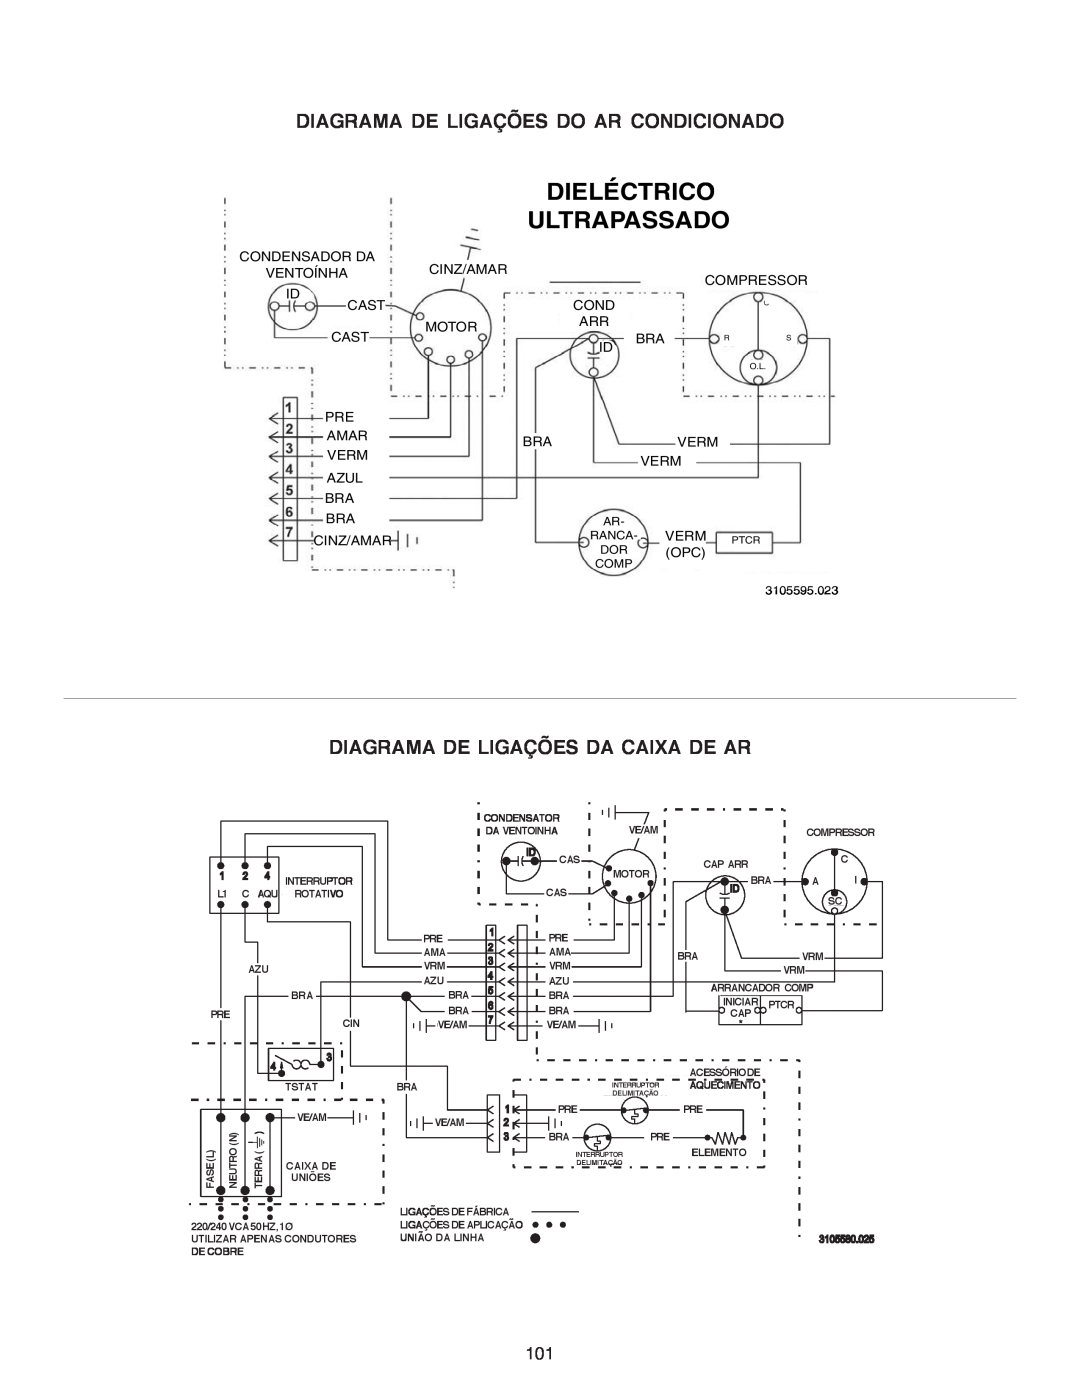 Dometic B3200 Dieléctrico, Diagrama De Ligações Do Ar Condicionado, Ultrapassado, Diagrama De Ligações Da Caixa De Ar 